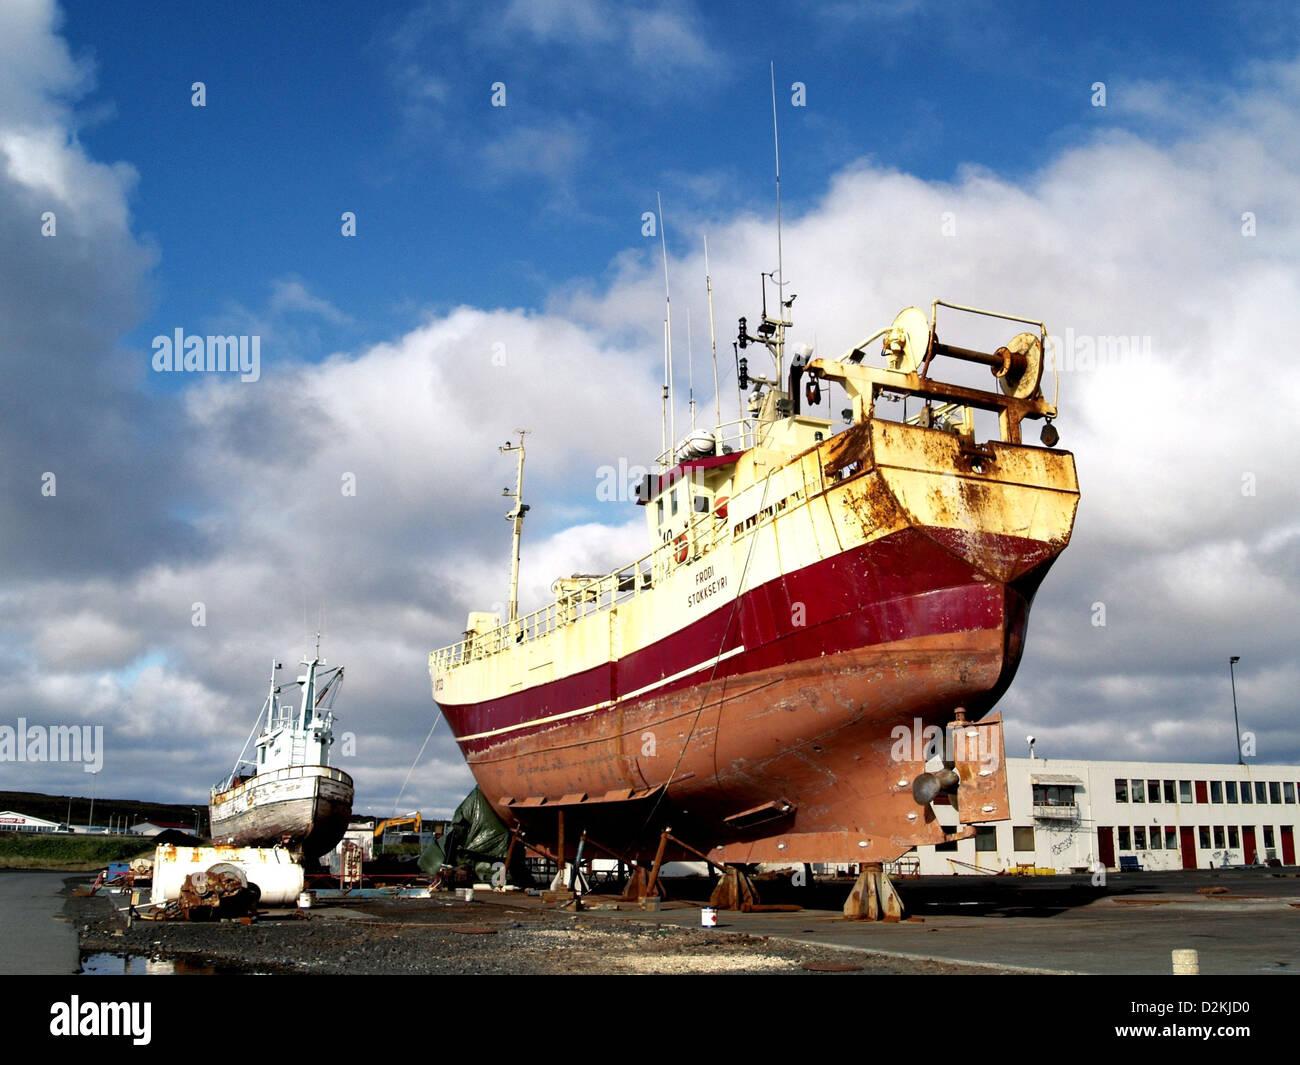 Two fishing boats ashore at a ship yard in Kevlavik, Iceland Stock Photo